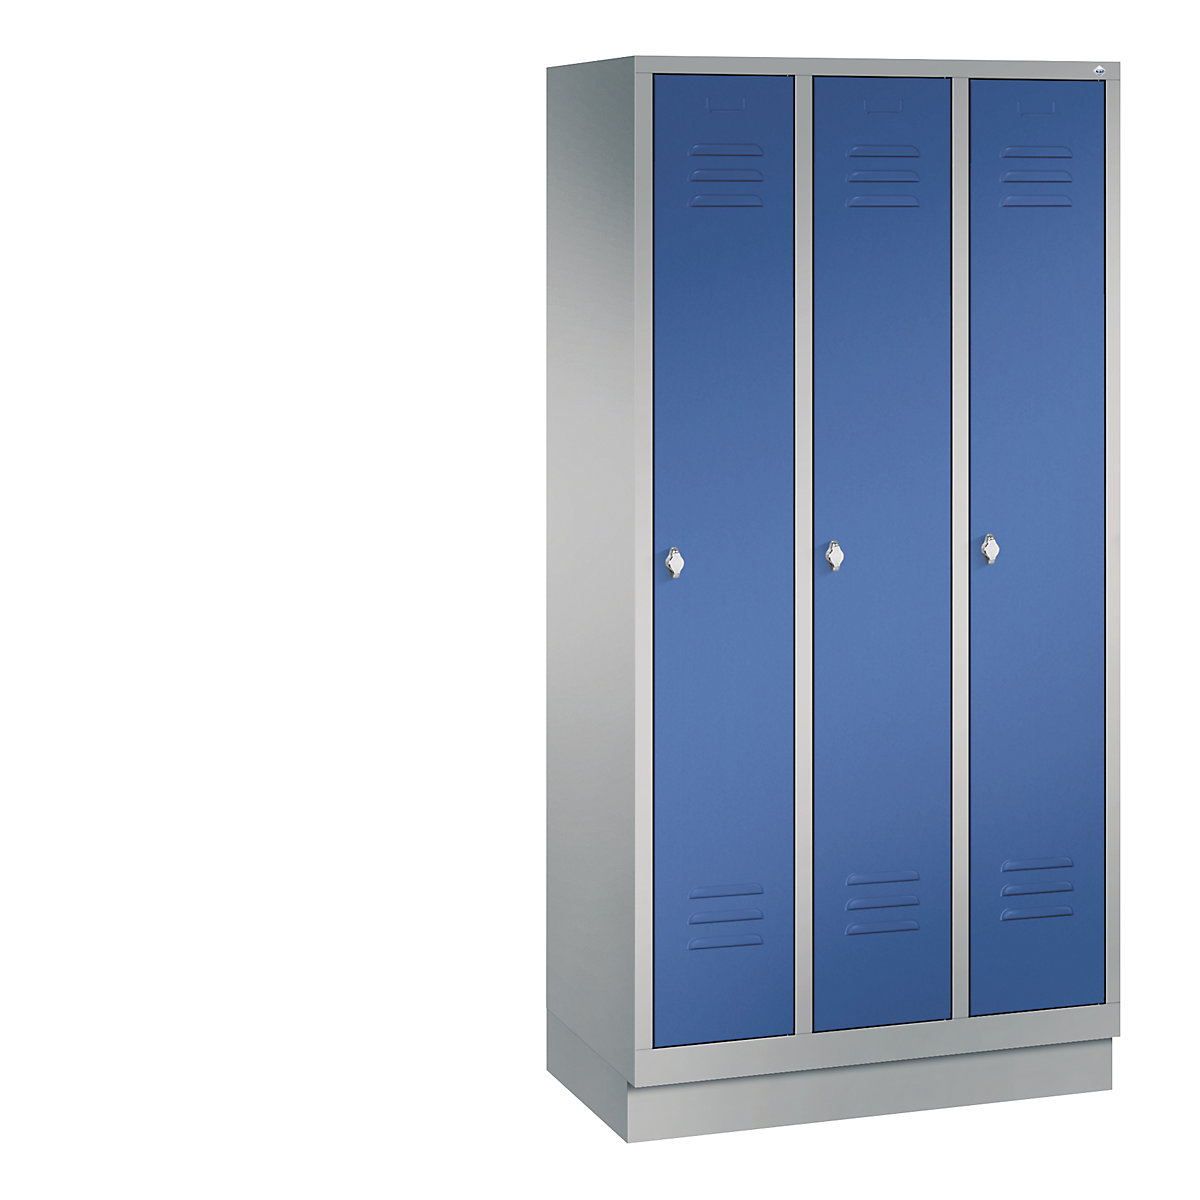 Garderobna omara CLASSIC s podnožjem – C+P, 3 predelki, širina 300 mm/predelek, aluminijasto bele / encijan modre barve-12